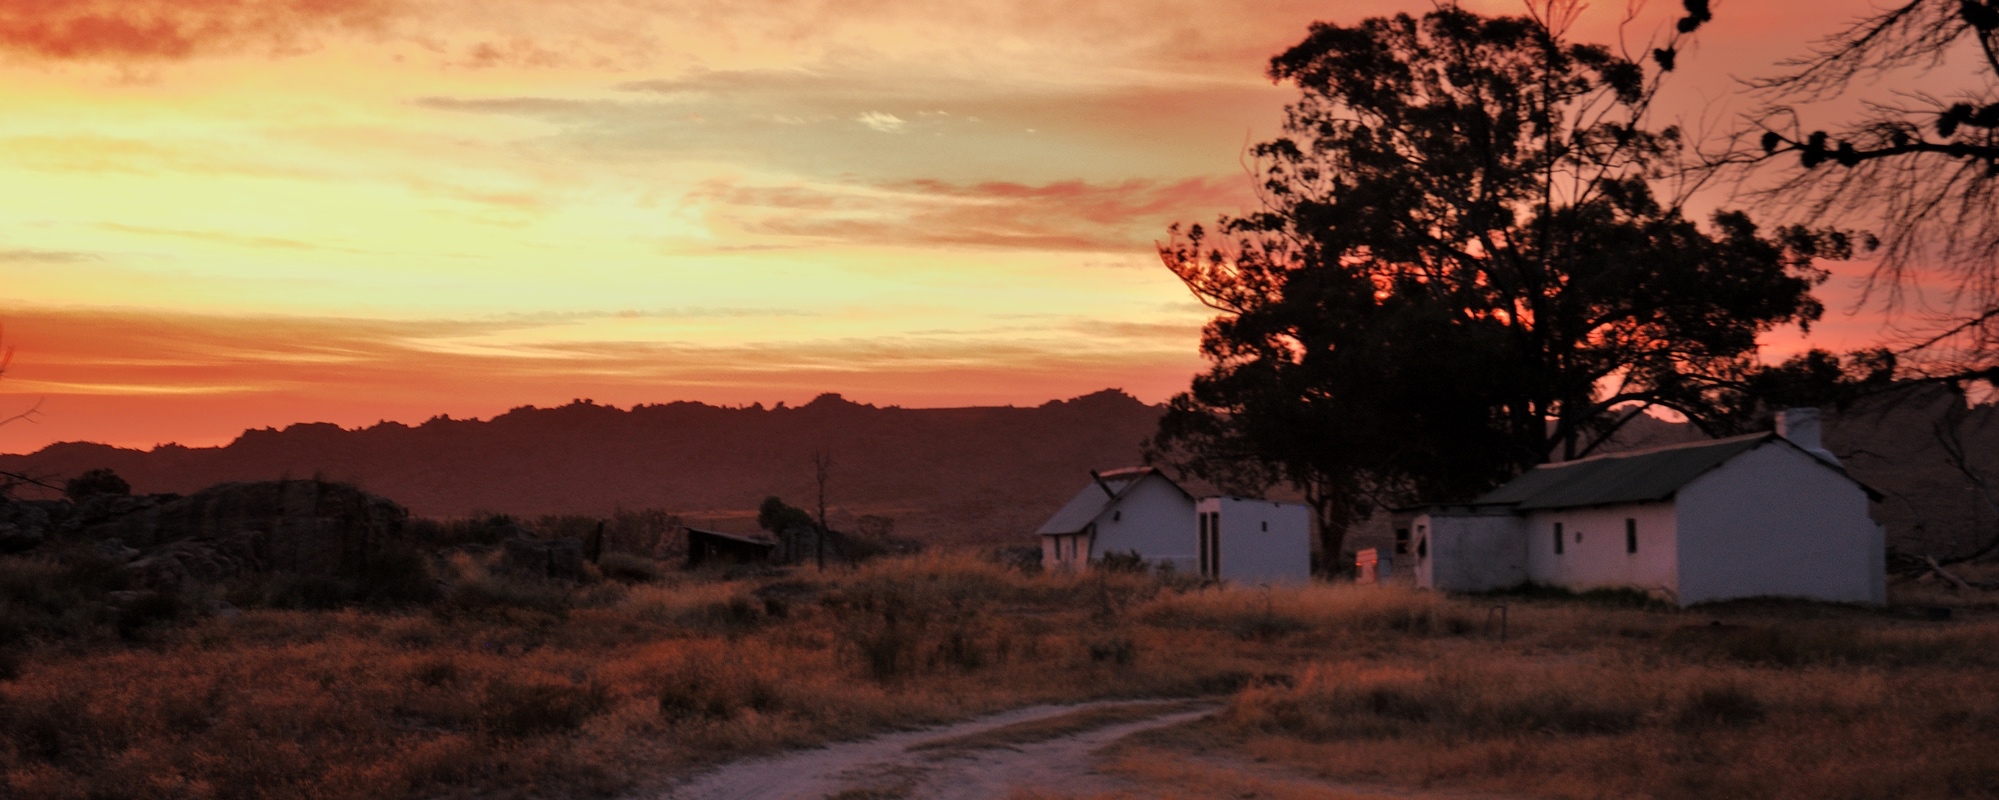 Kalahari Calling sunset